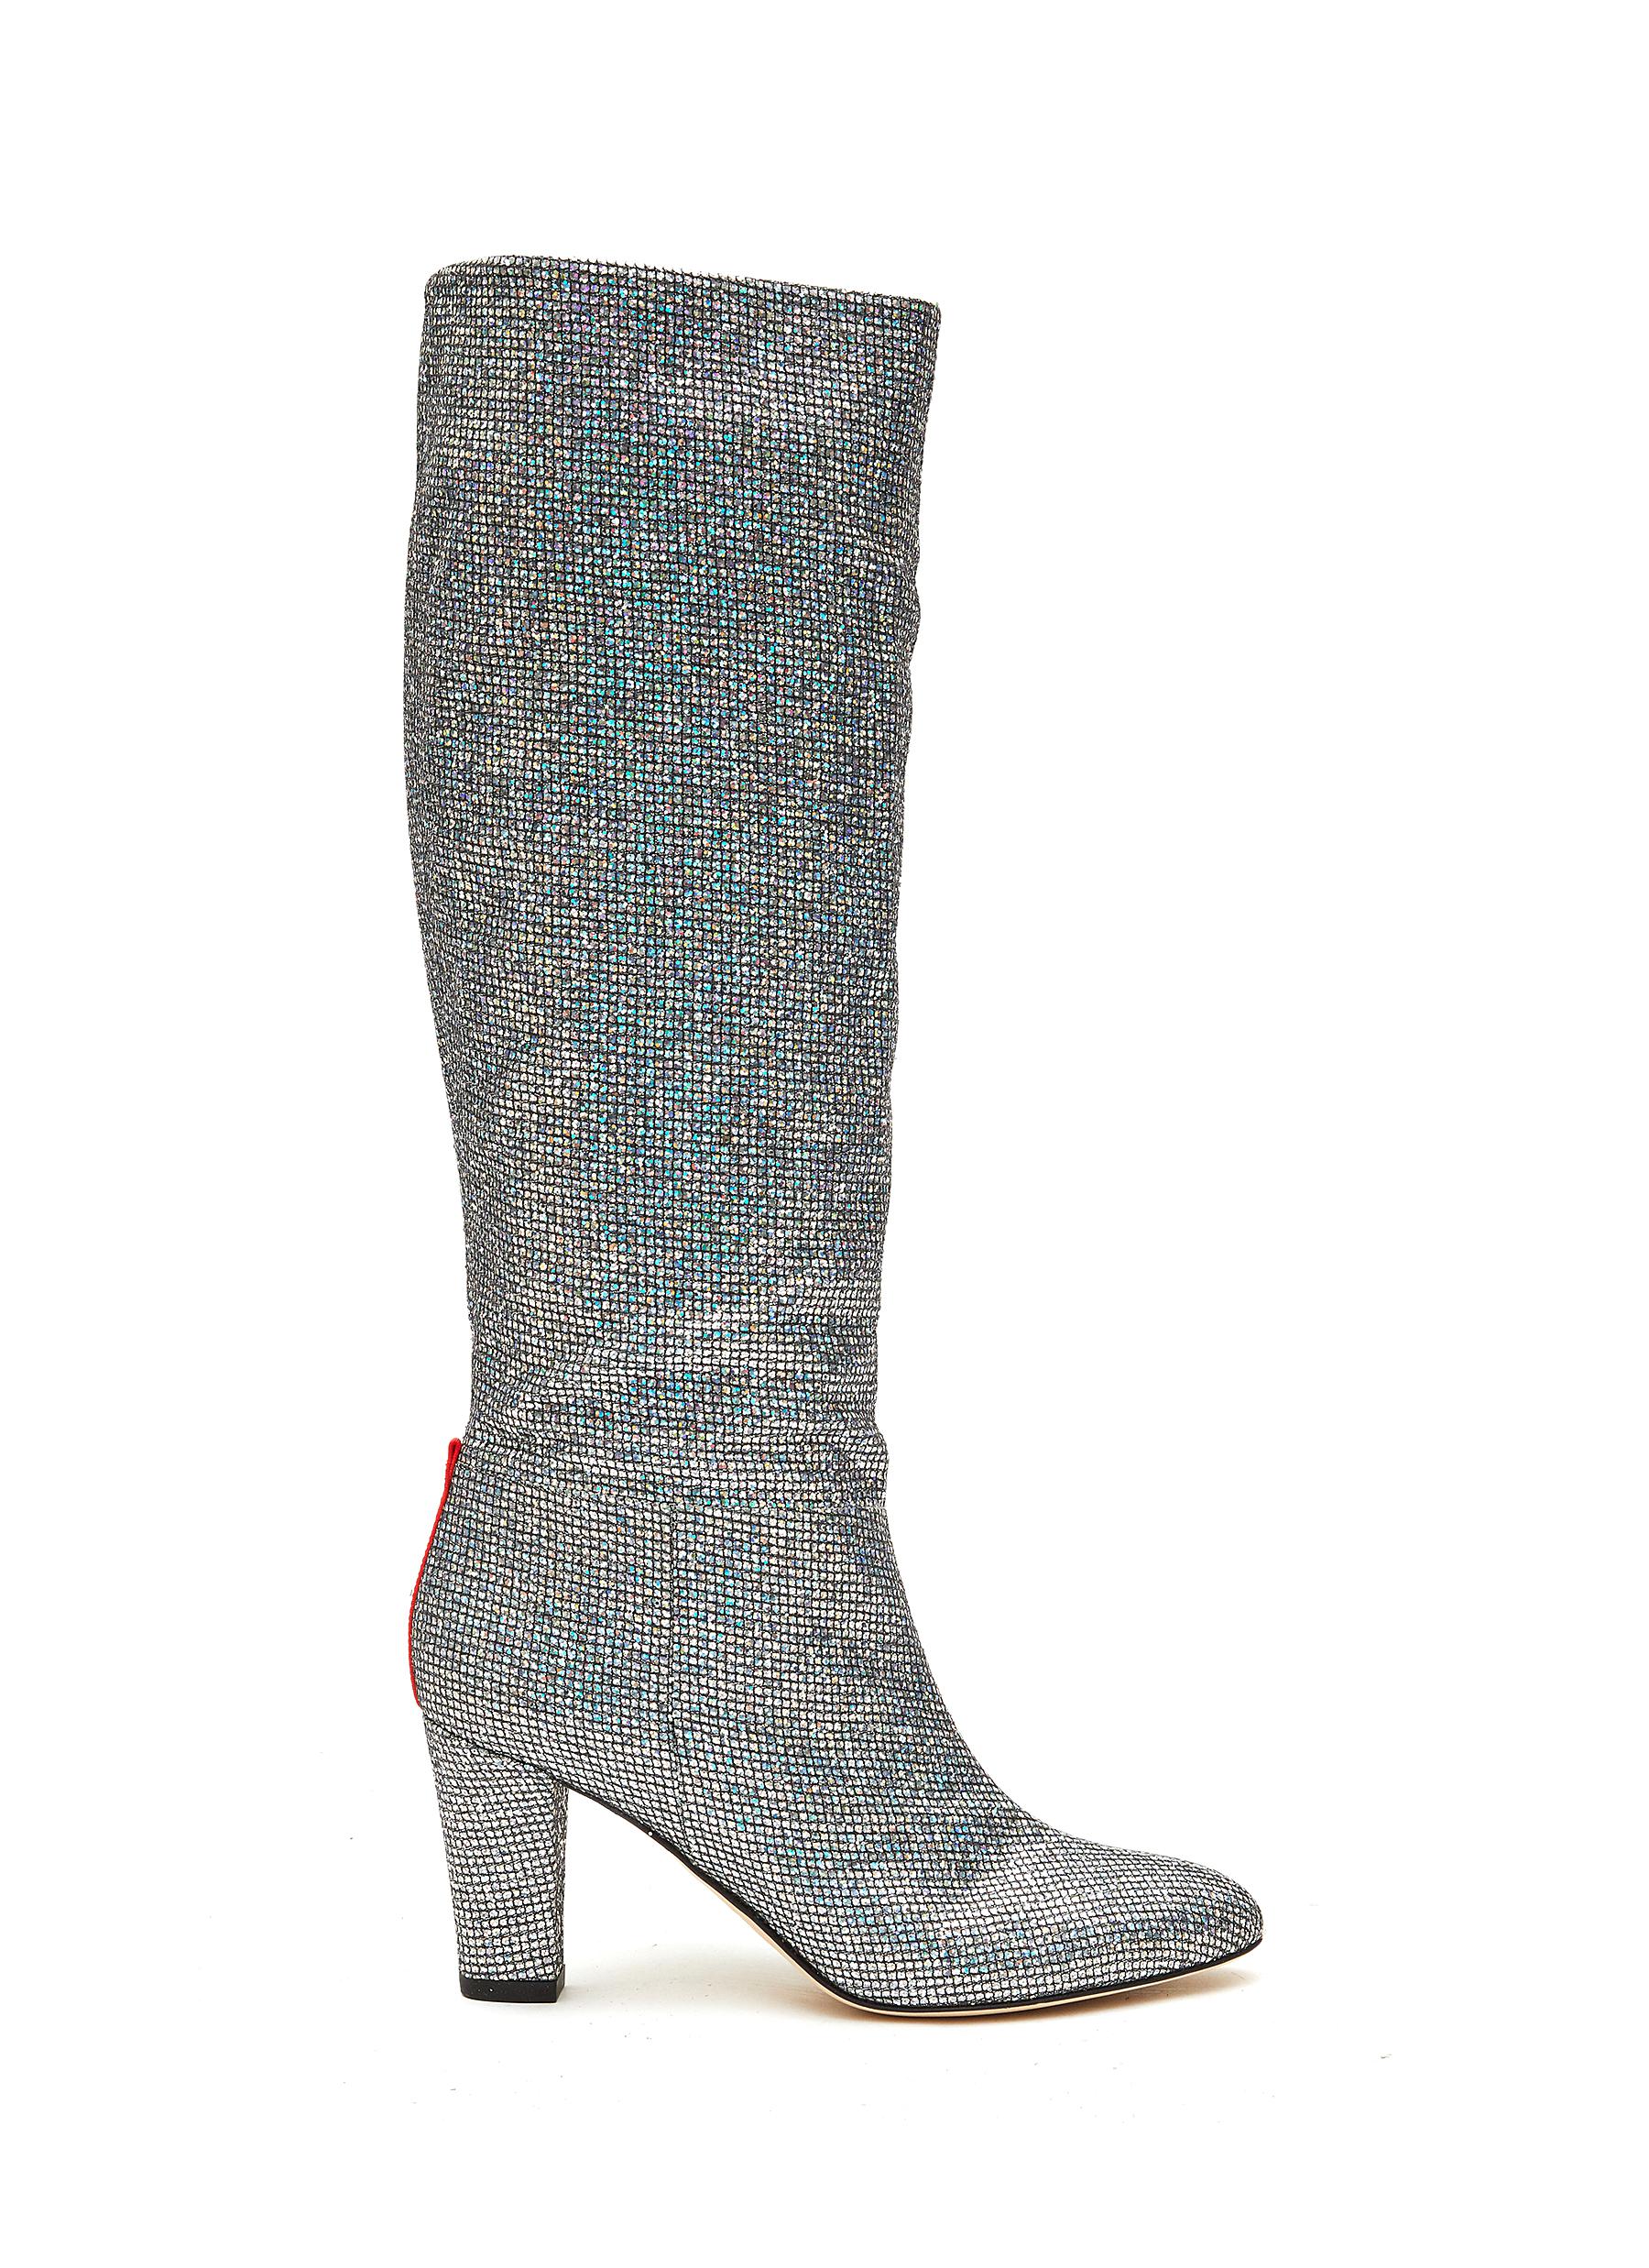 'Studio' 75 Glittered Mesh Tall Boots